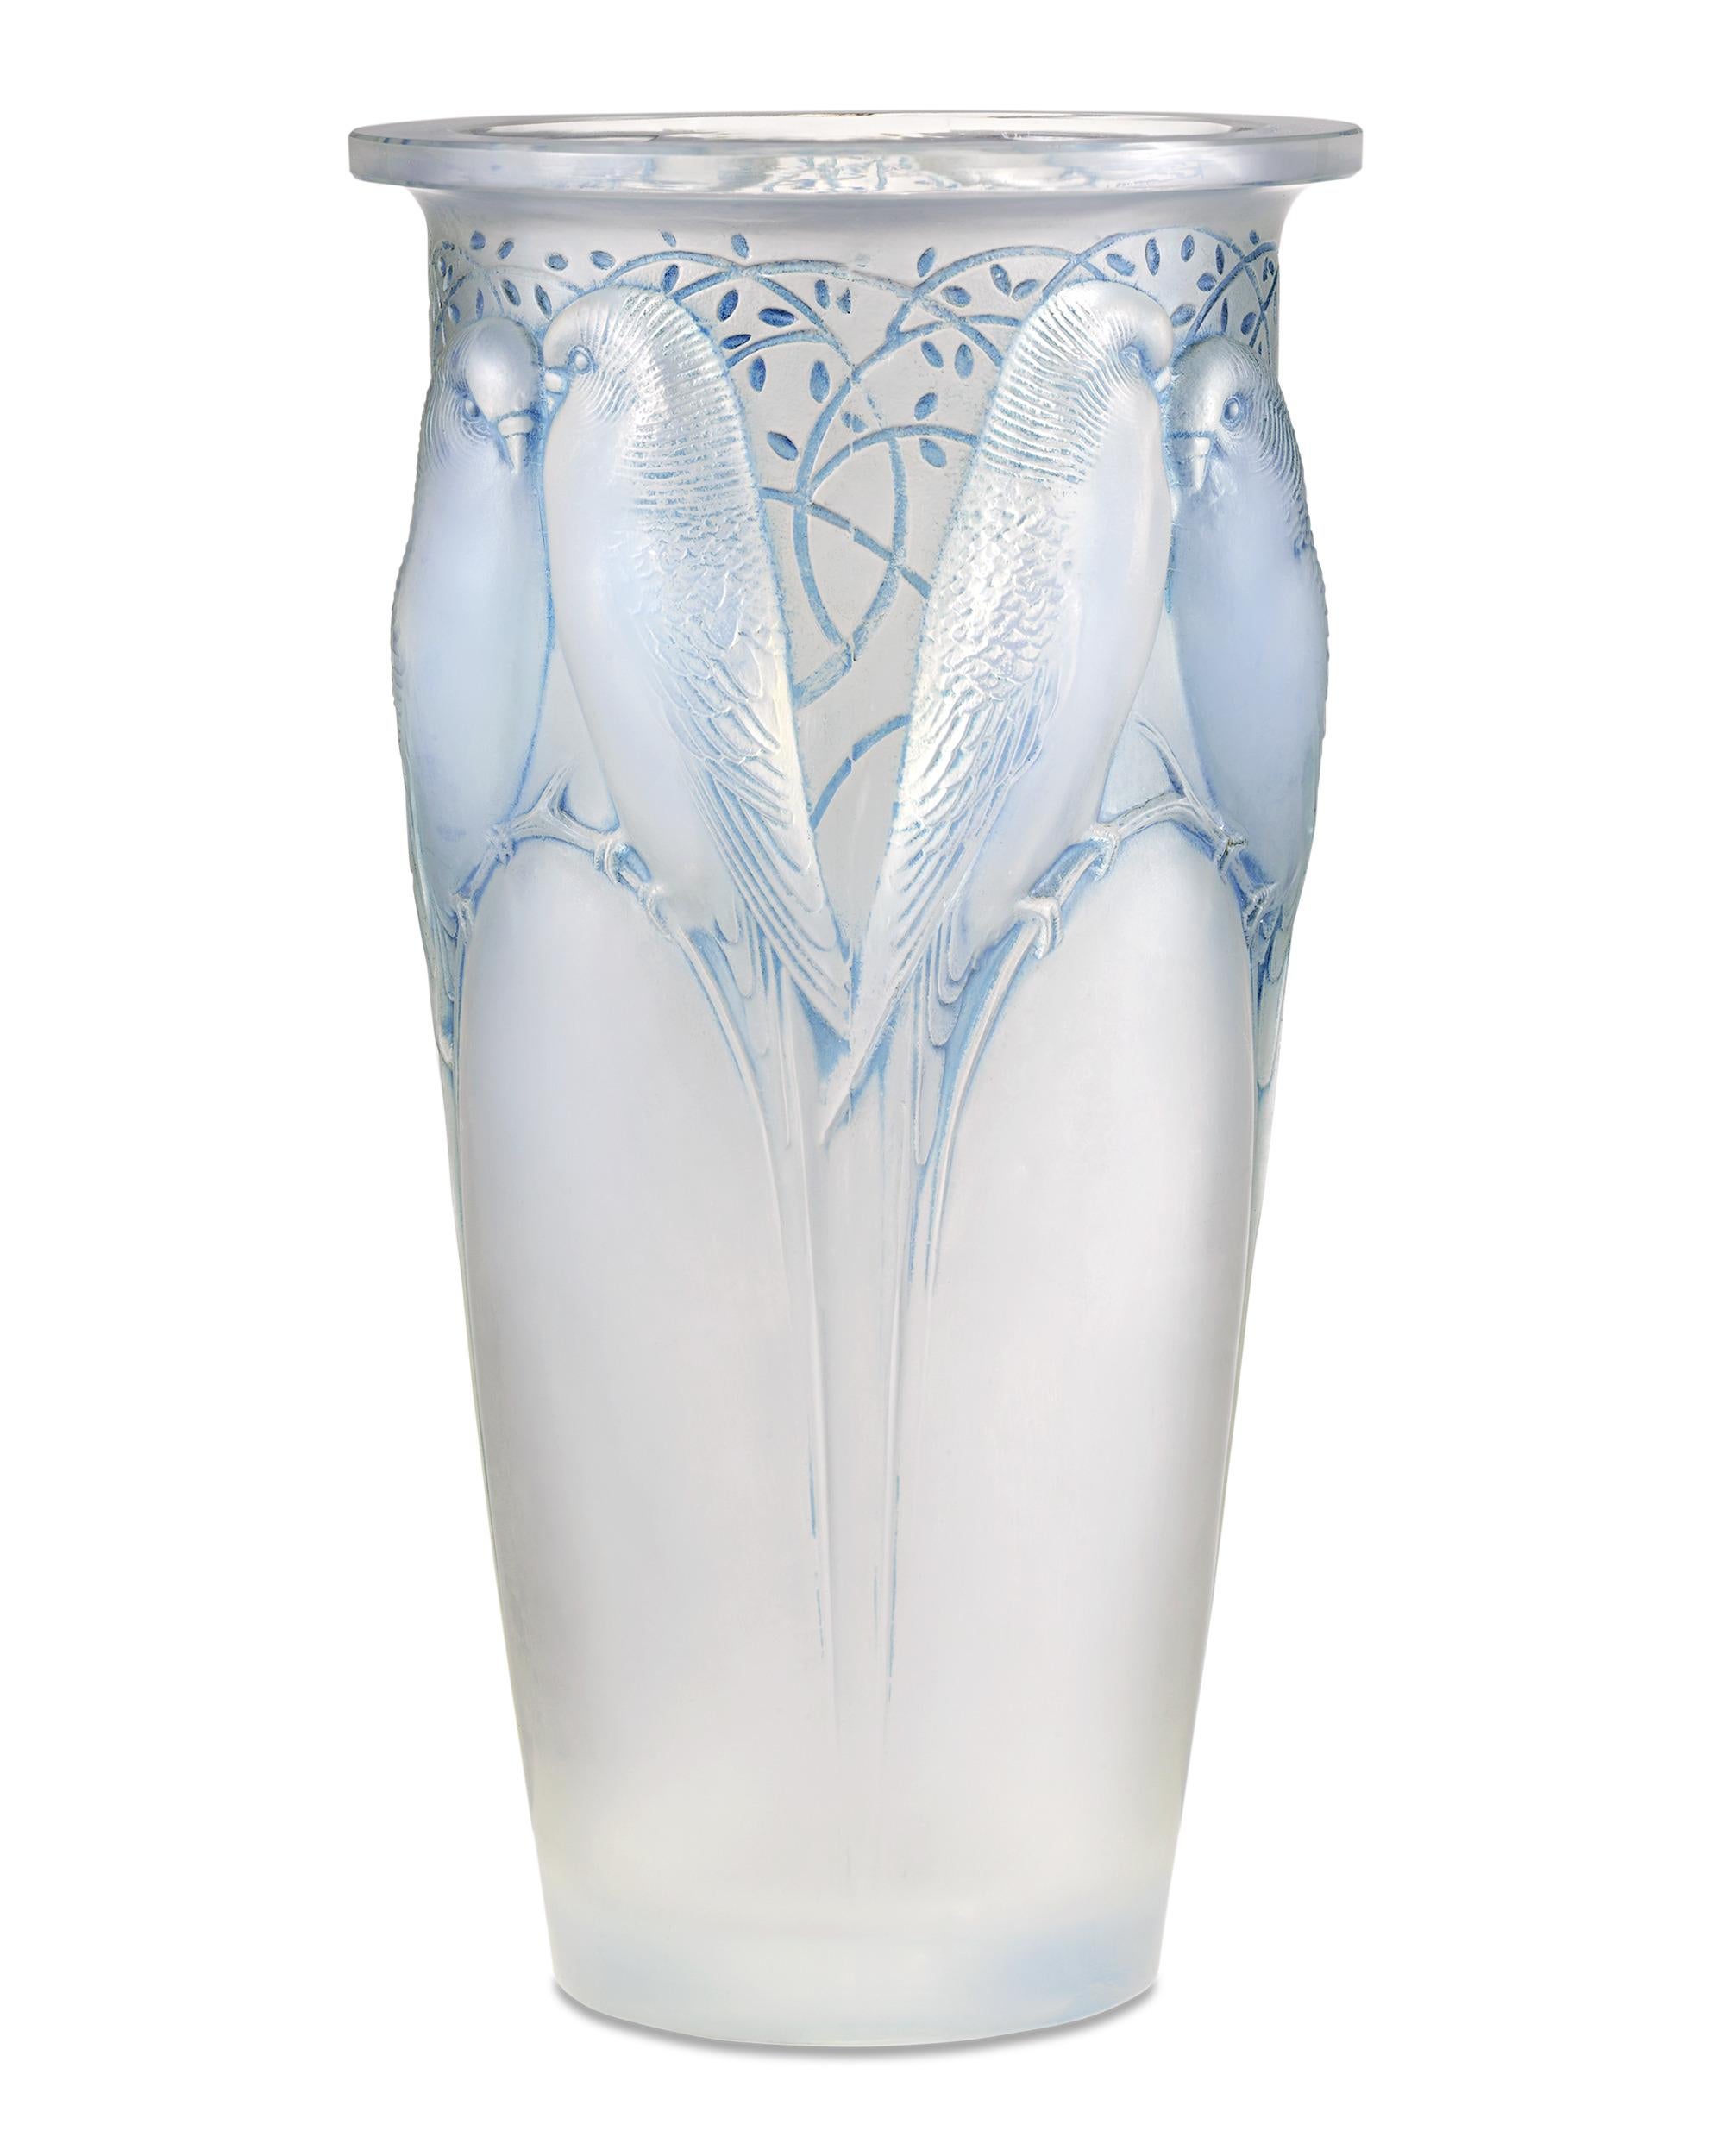 Diese bezaubernde Ceylan-Vase wurde von dem berühmten französischen Glasmacher René Lalique aus opalisierendem Glas mit einem blau gefärbten Rad geformt. Das von Lalique am 16. Mai 1924 entworfene Design ist auch unter dem Namen Huit perruches